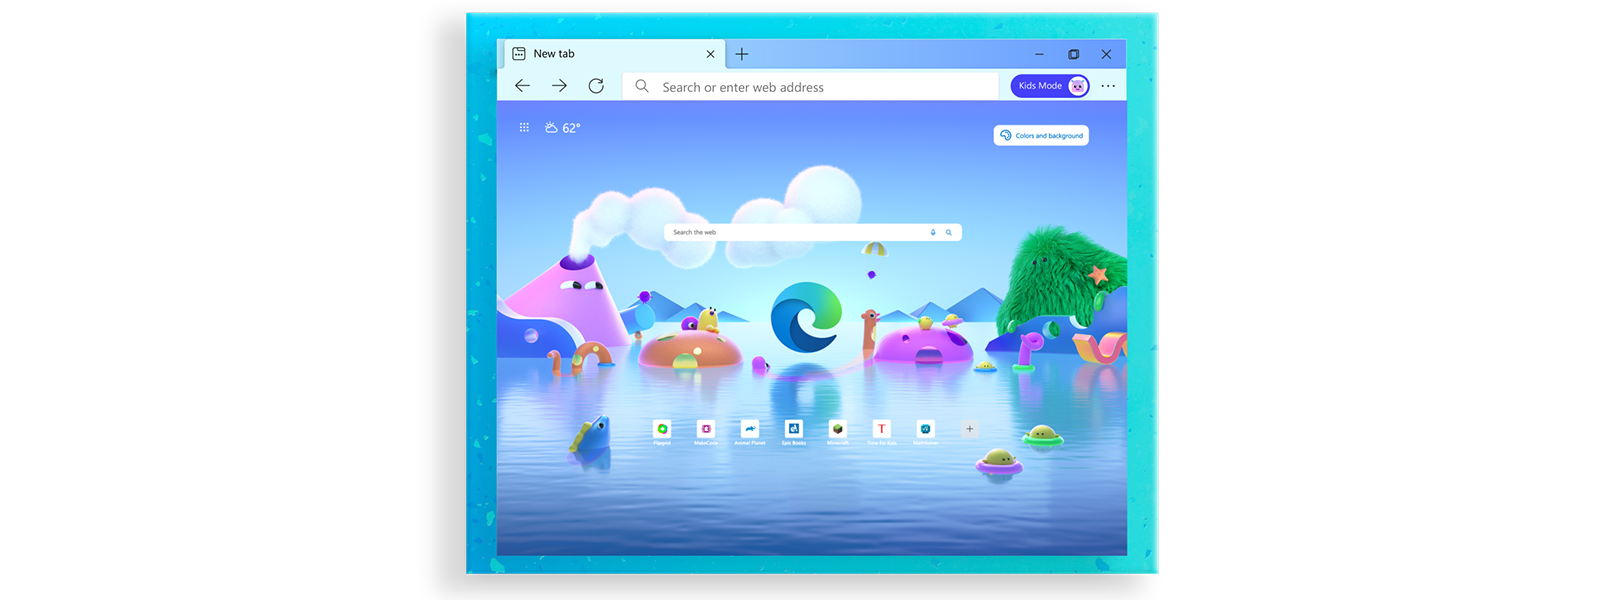 La schermata iniziale del browser Microsoft Edge con vari personaggi di cartoni animati per la modalità Bambini